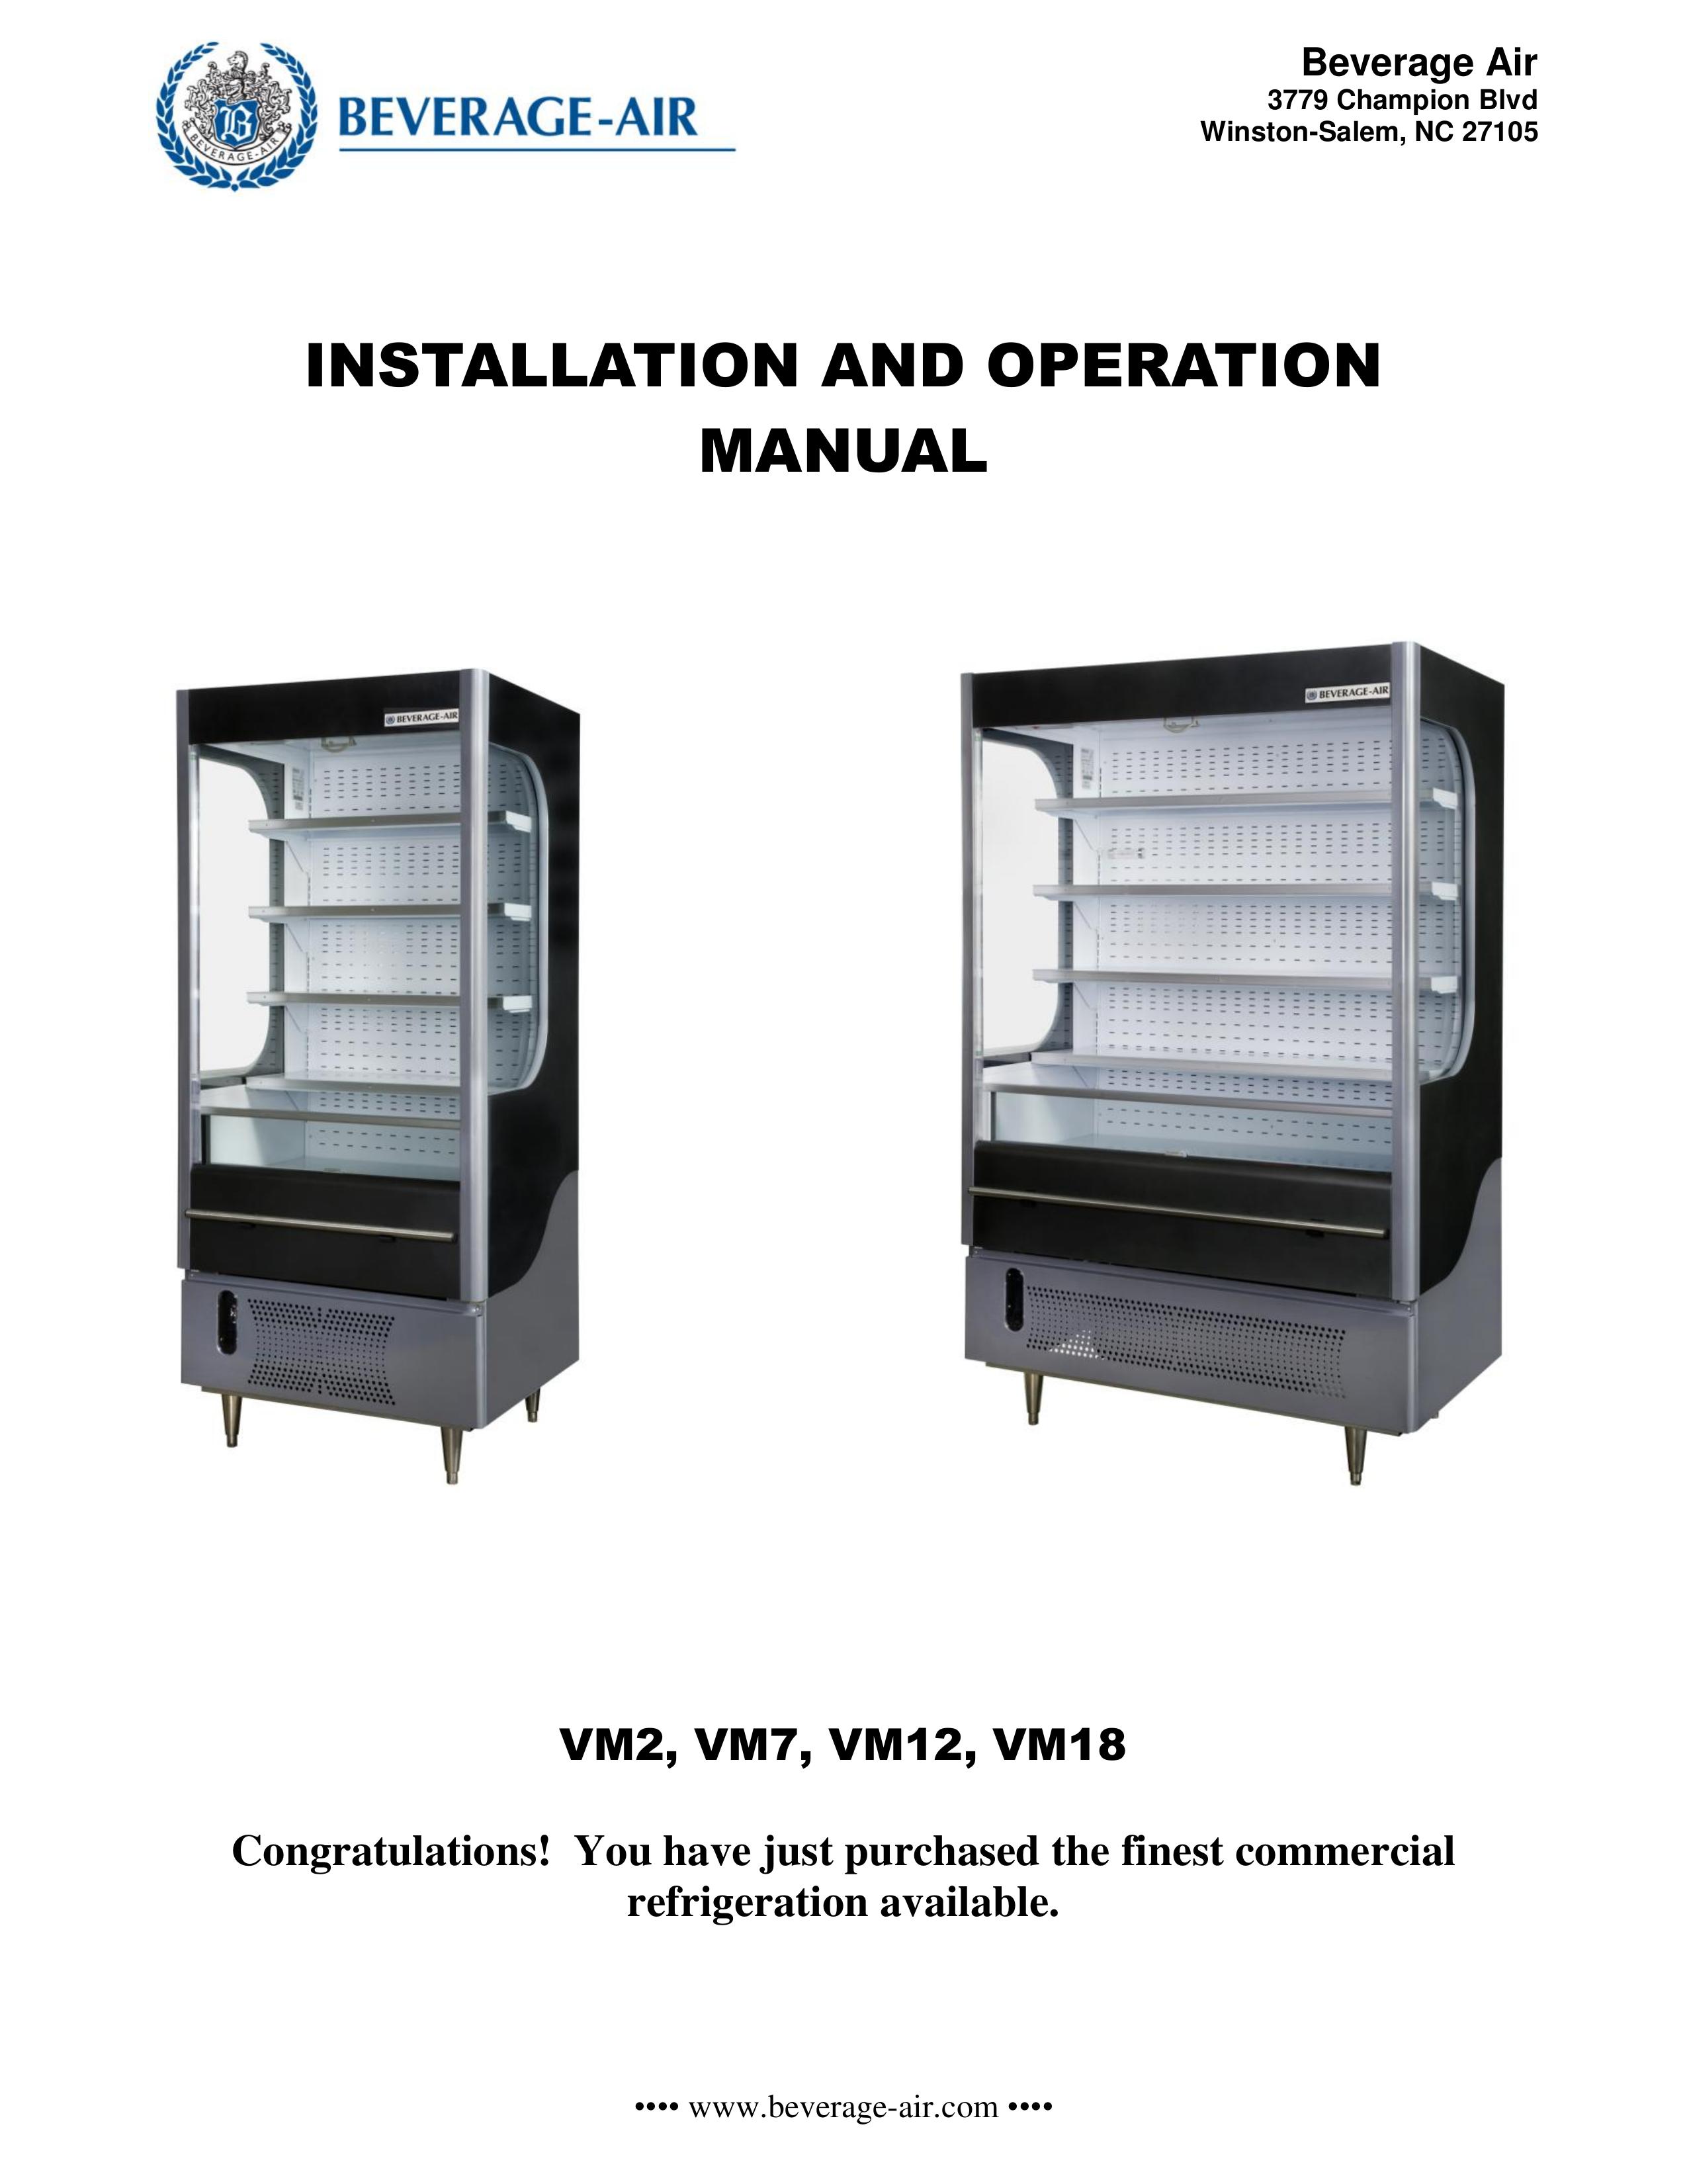 Beverage-Air VM18 Refrigerator User Manual